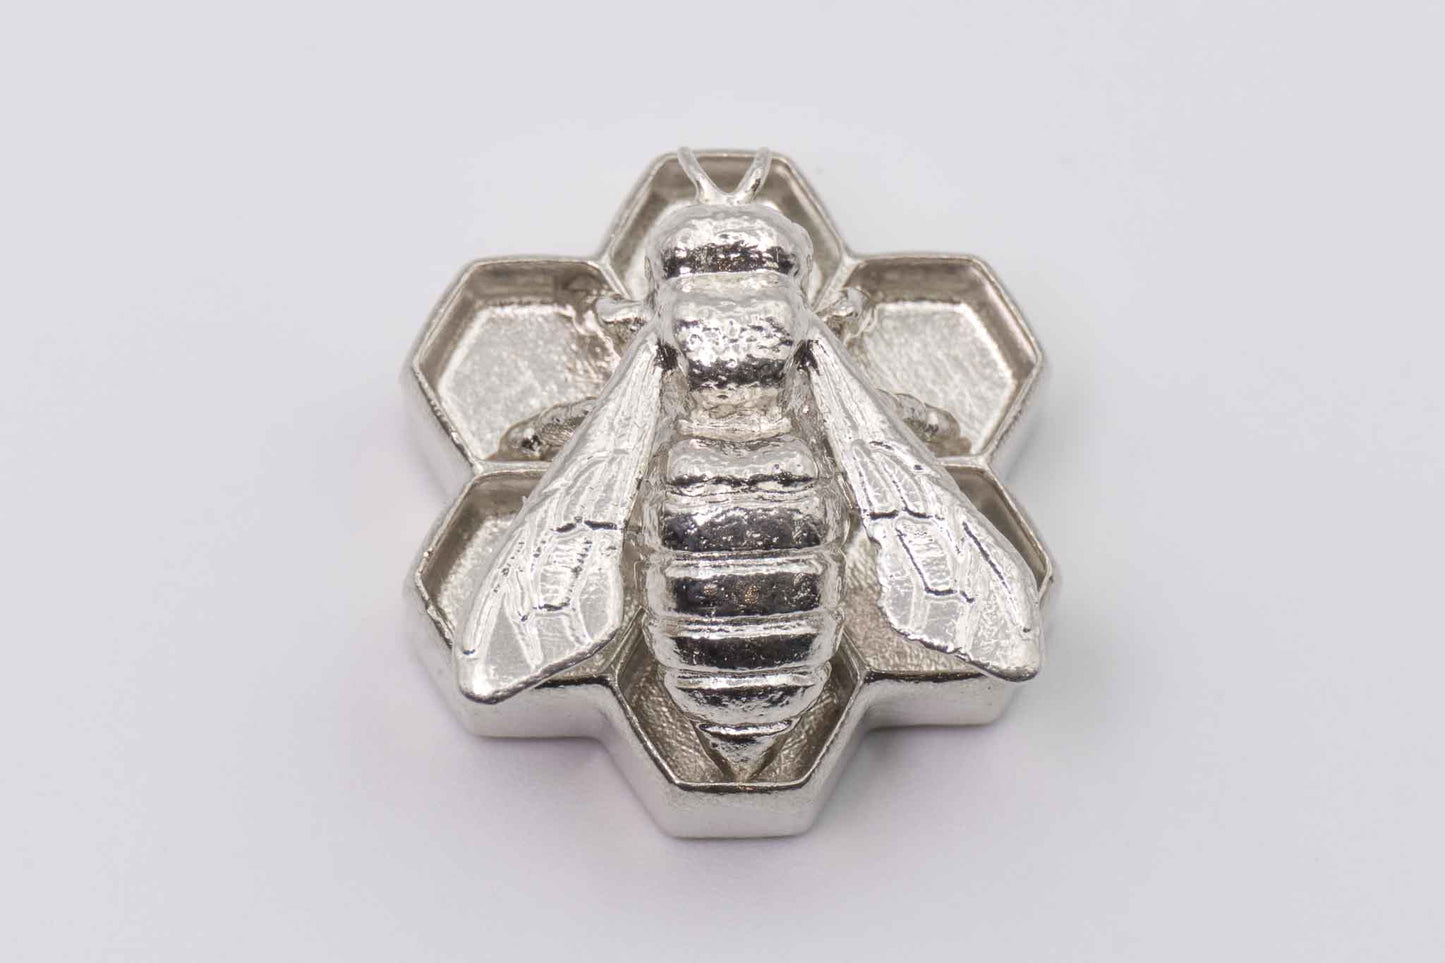 Honey bee honeycomb jewelry casting